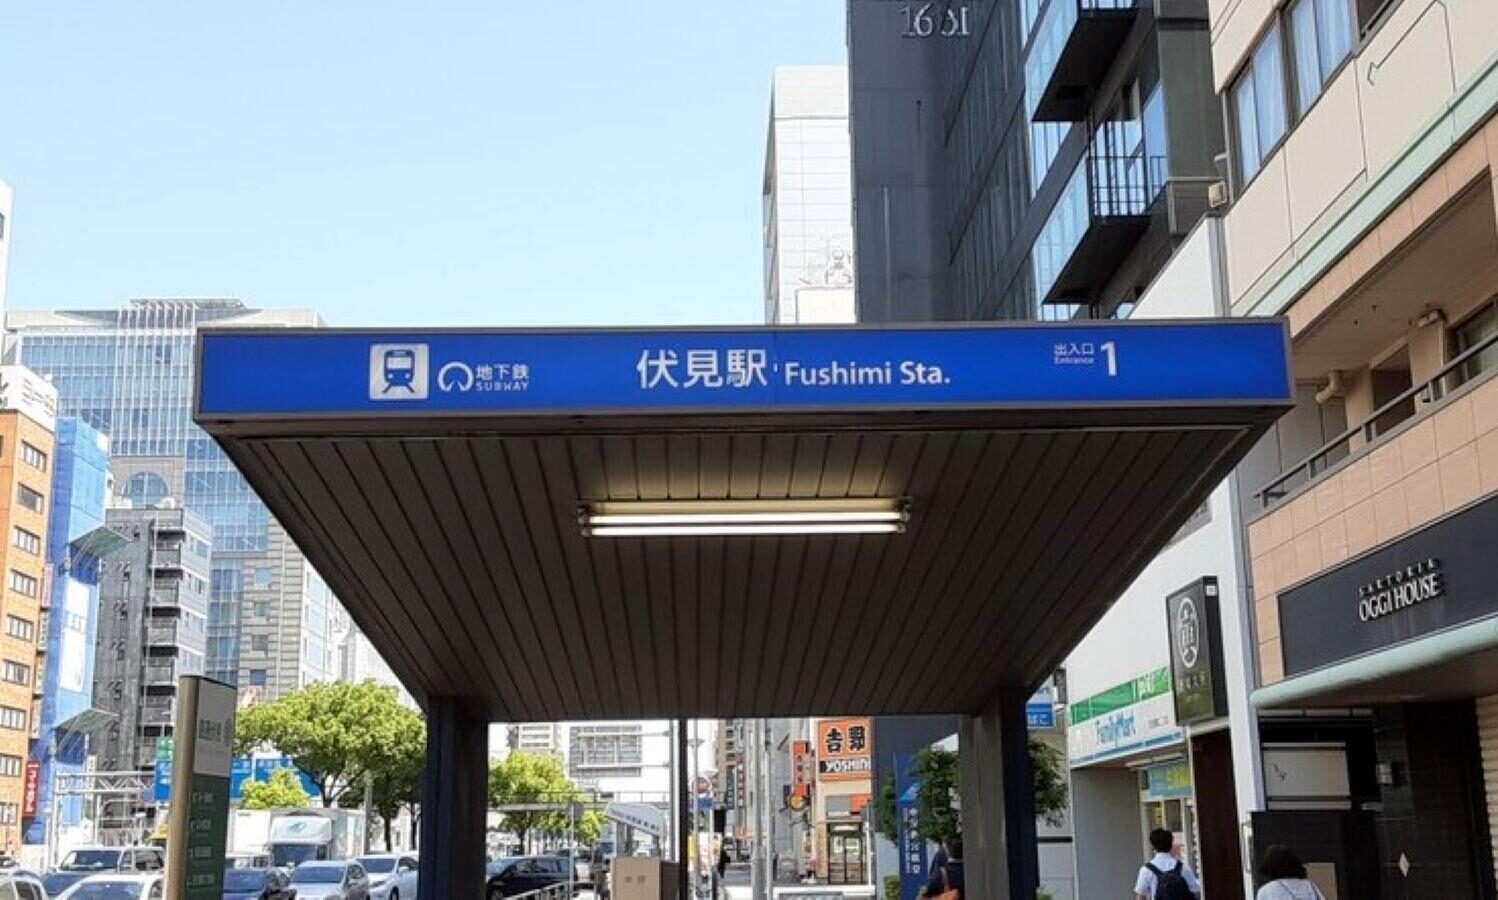 名古屋市営地下鉄の駅ホームで女性が列車に跳ねられ死亡